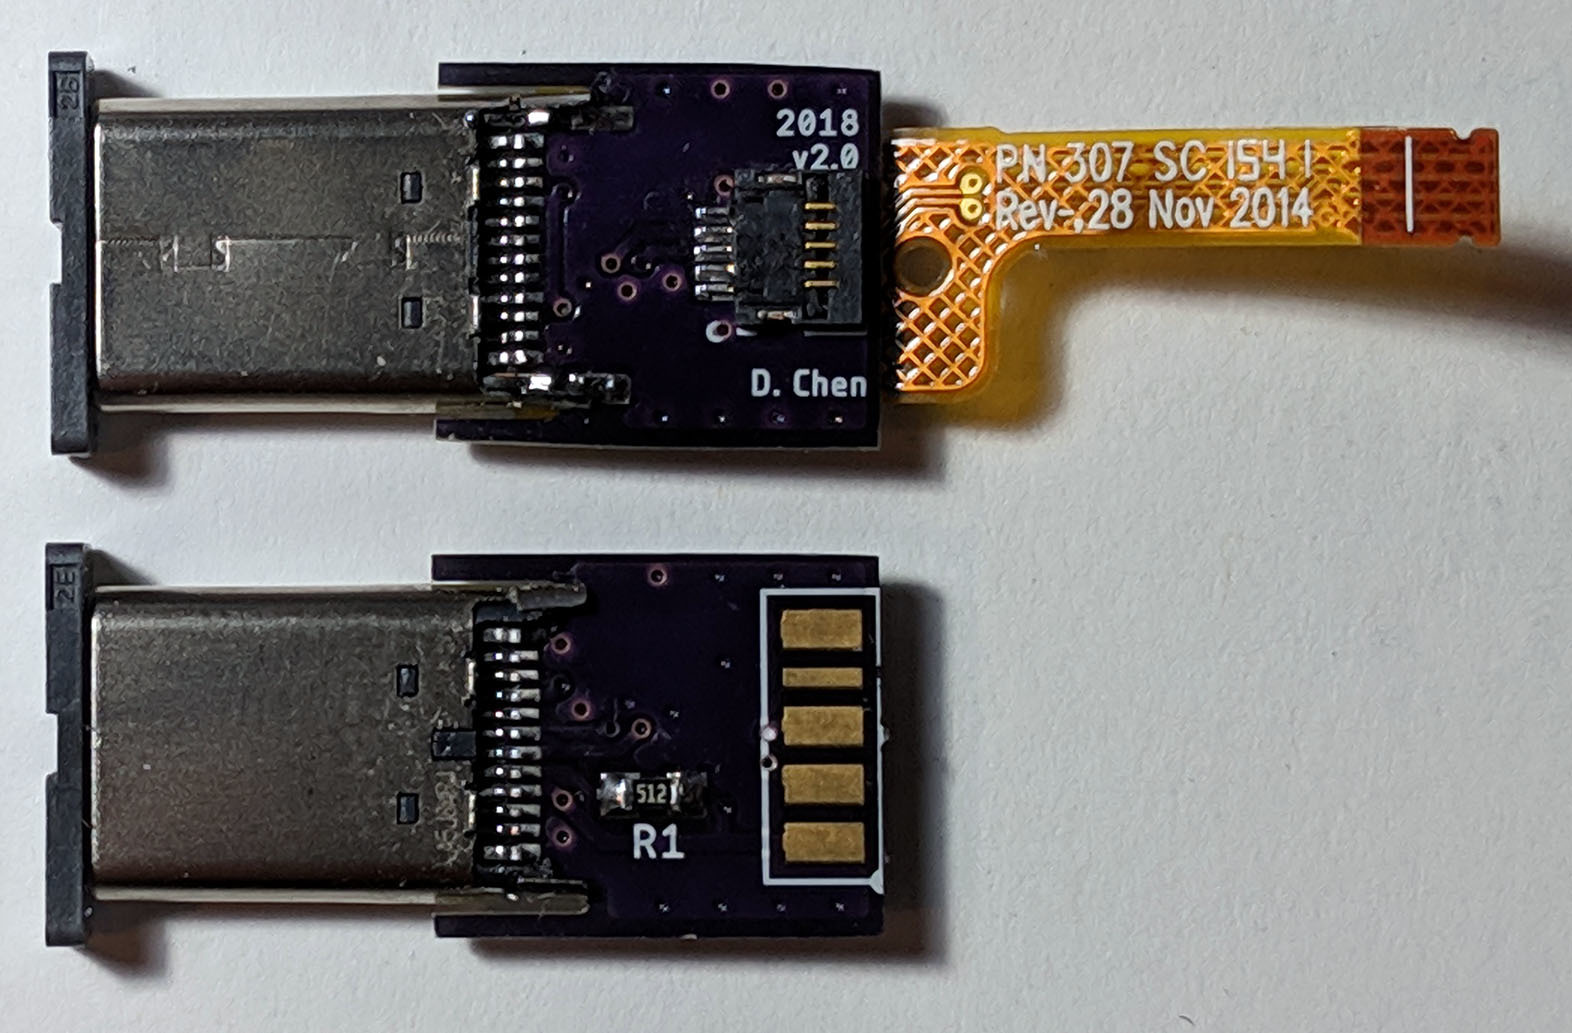 スマートフォン/携帯電話 その他 Retrofitting the Seek Thermal Compact with a USB Type-C Connector 